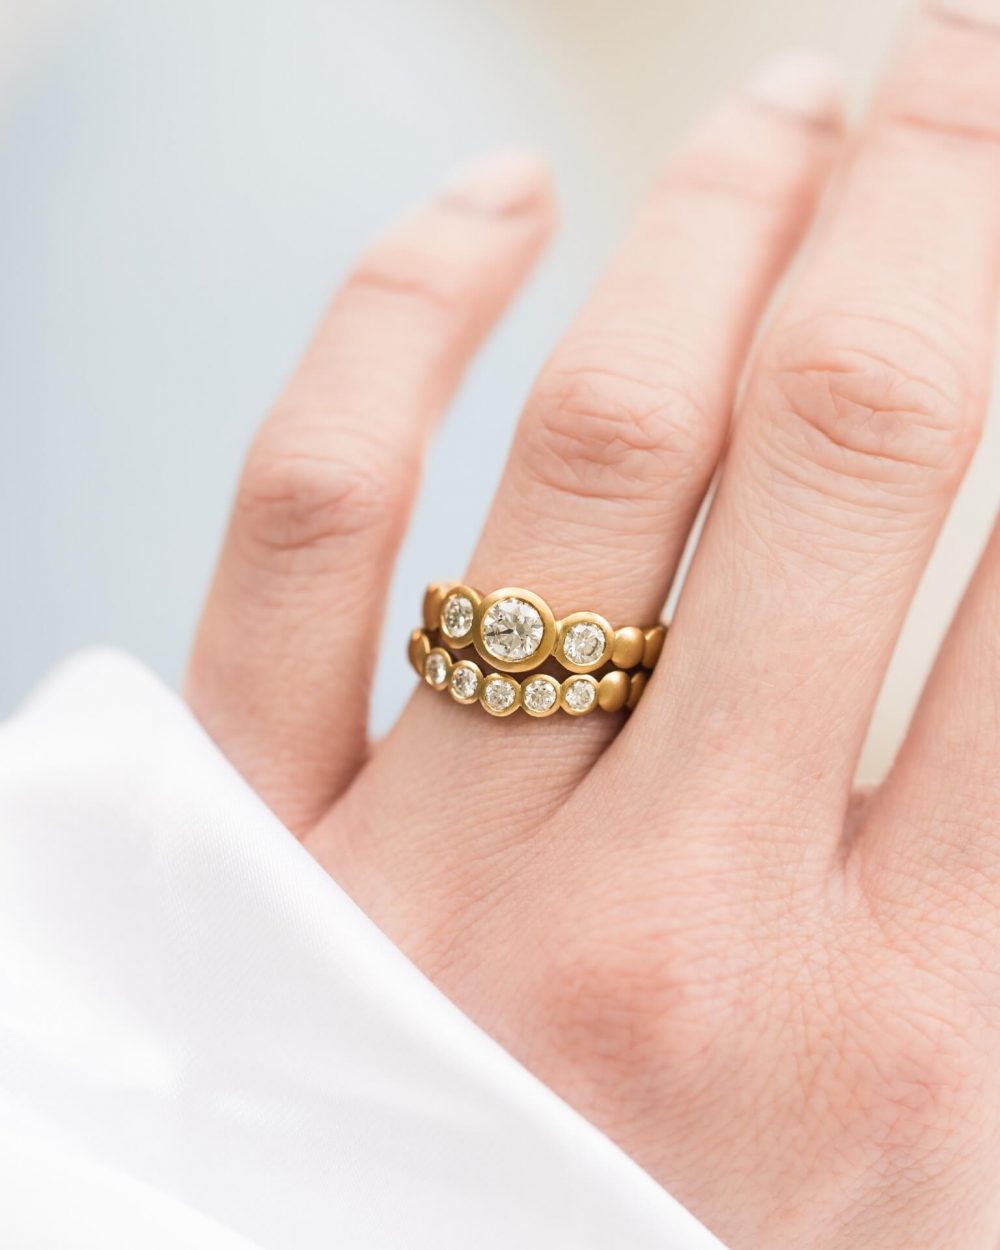 Diamond Trilogy Engagement Ring On Models Finger. Handmade By Bristol Jeweller Jacks Turner